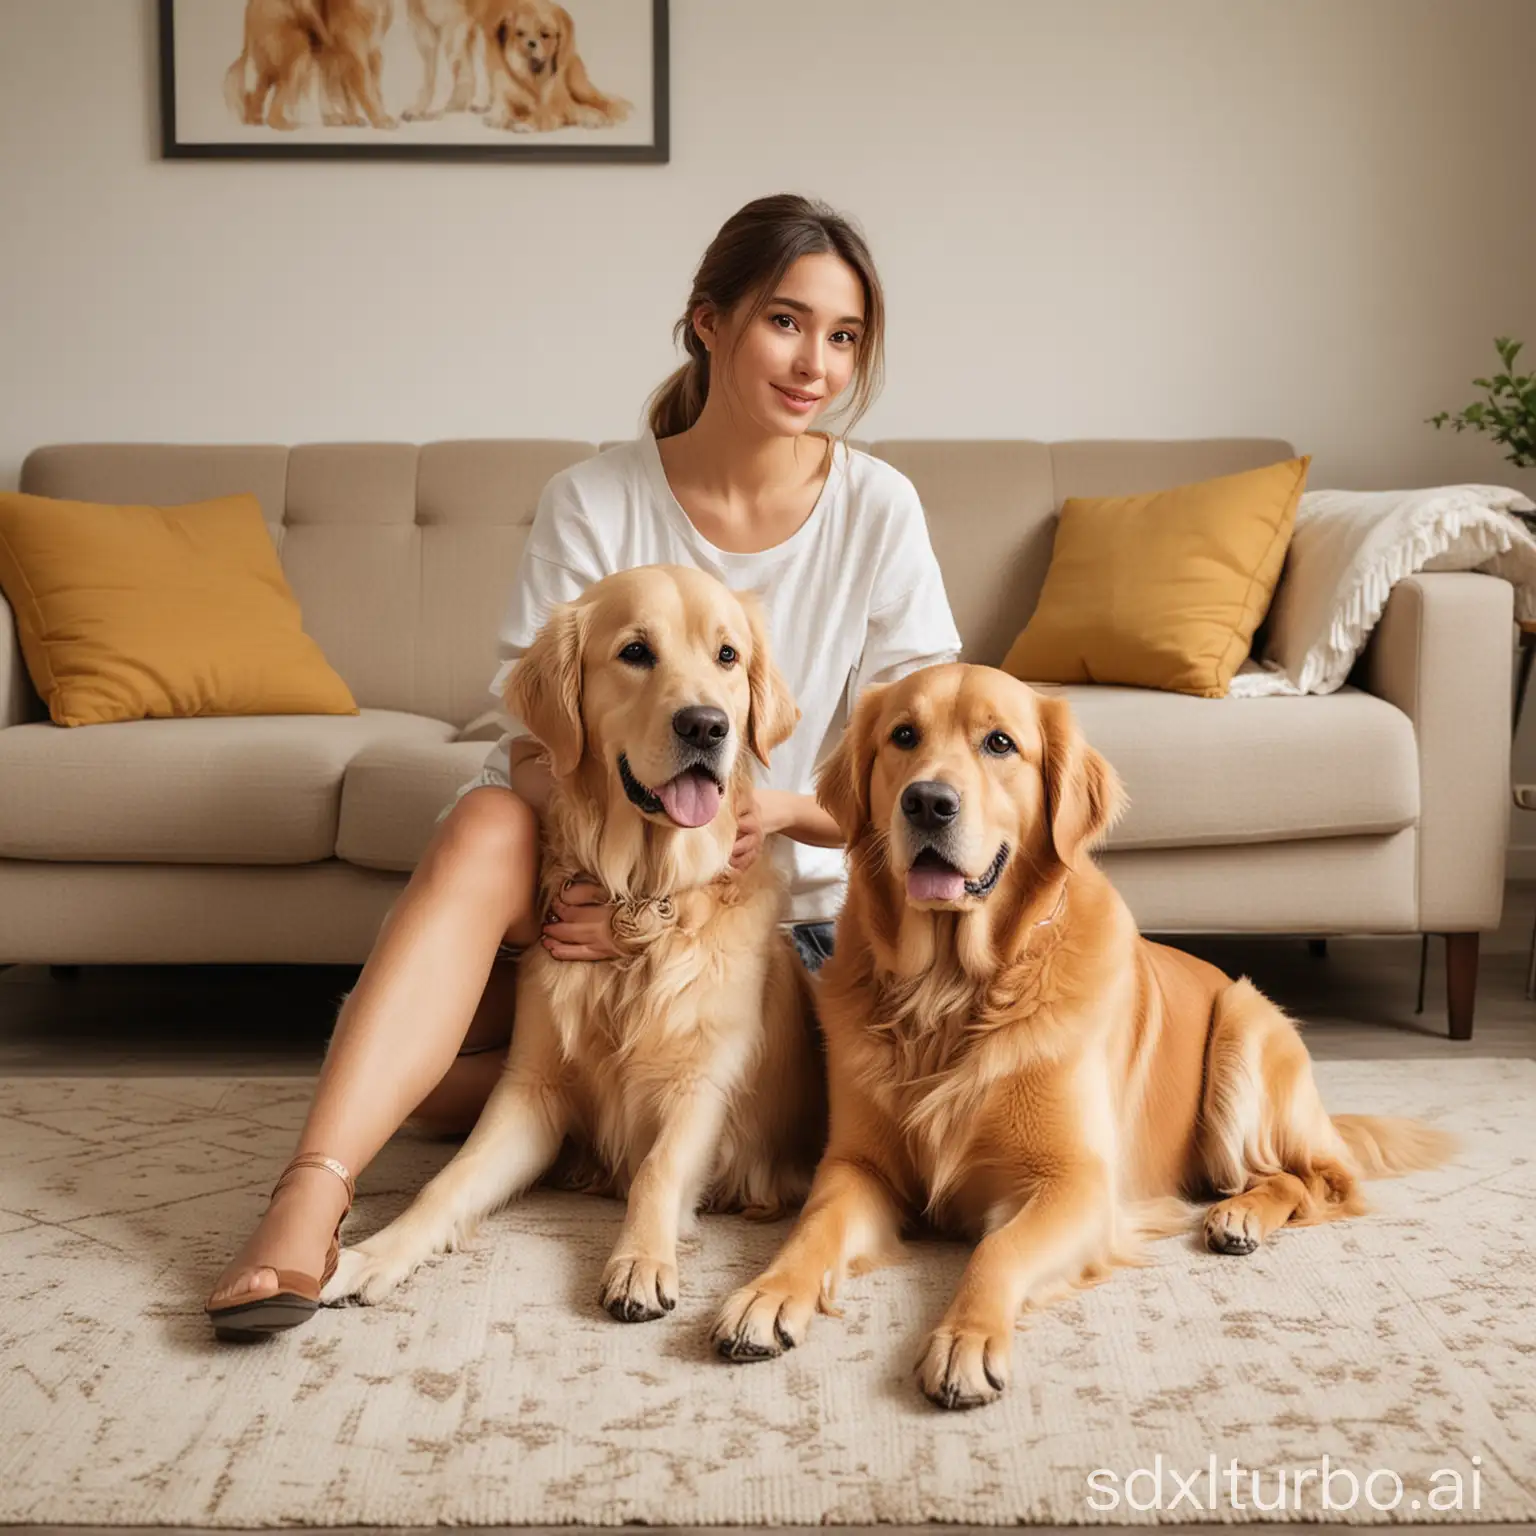 一位漂亮的外国成年女生抱着一只金毛犬坐在客厅的地毯上，客厅背景场景简约，人物真实，金毛犬真实，画质清晰